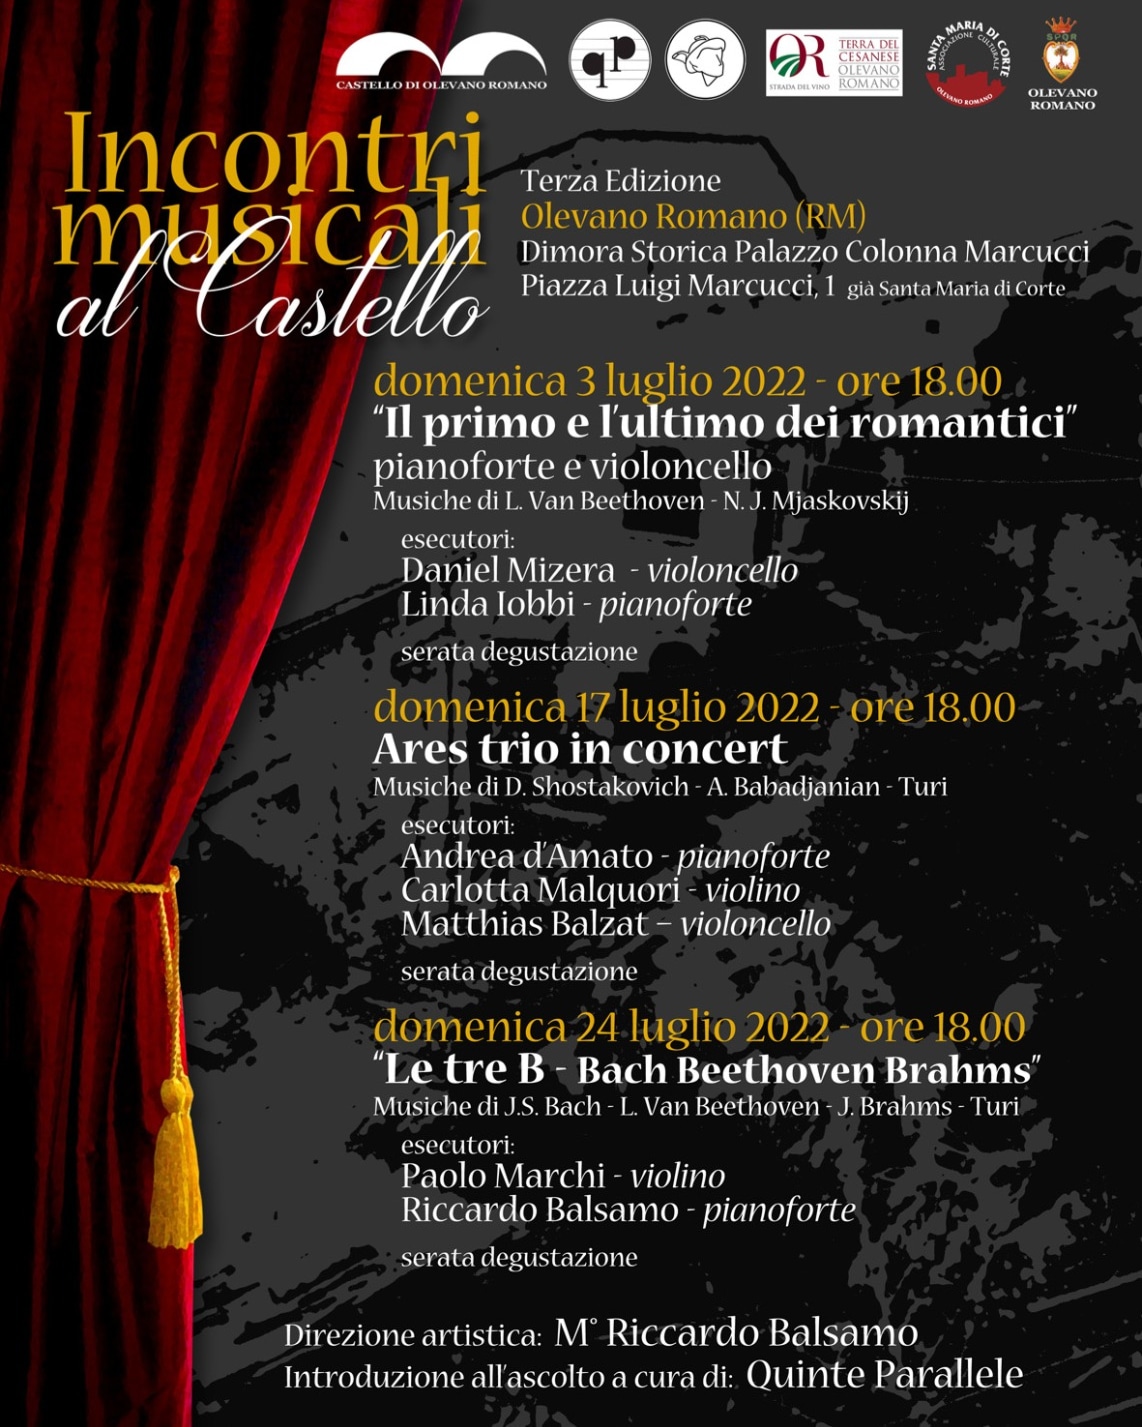 https://www.agenziaeventi.org/immagini_news/3033/olevano-romano-incontri-musicali-al-castello-3033.jpg